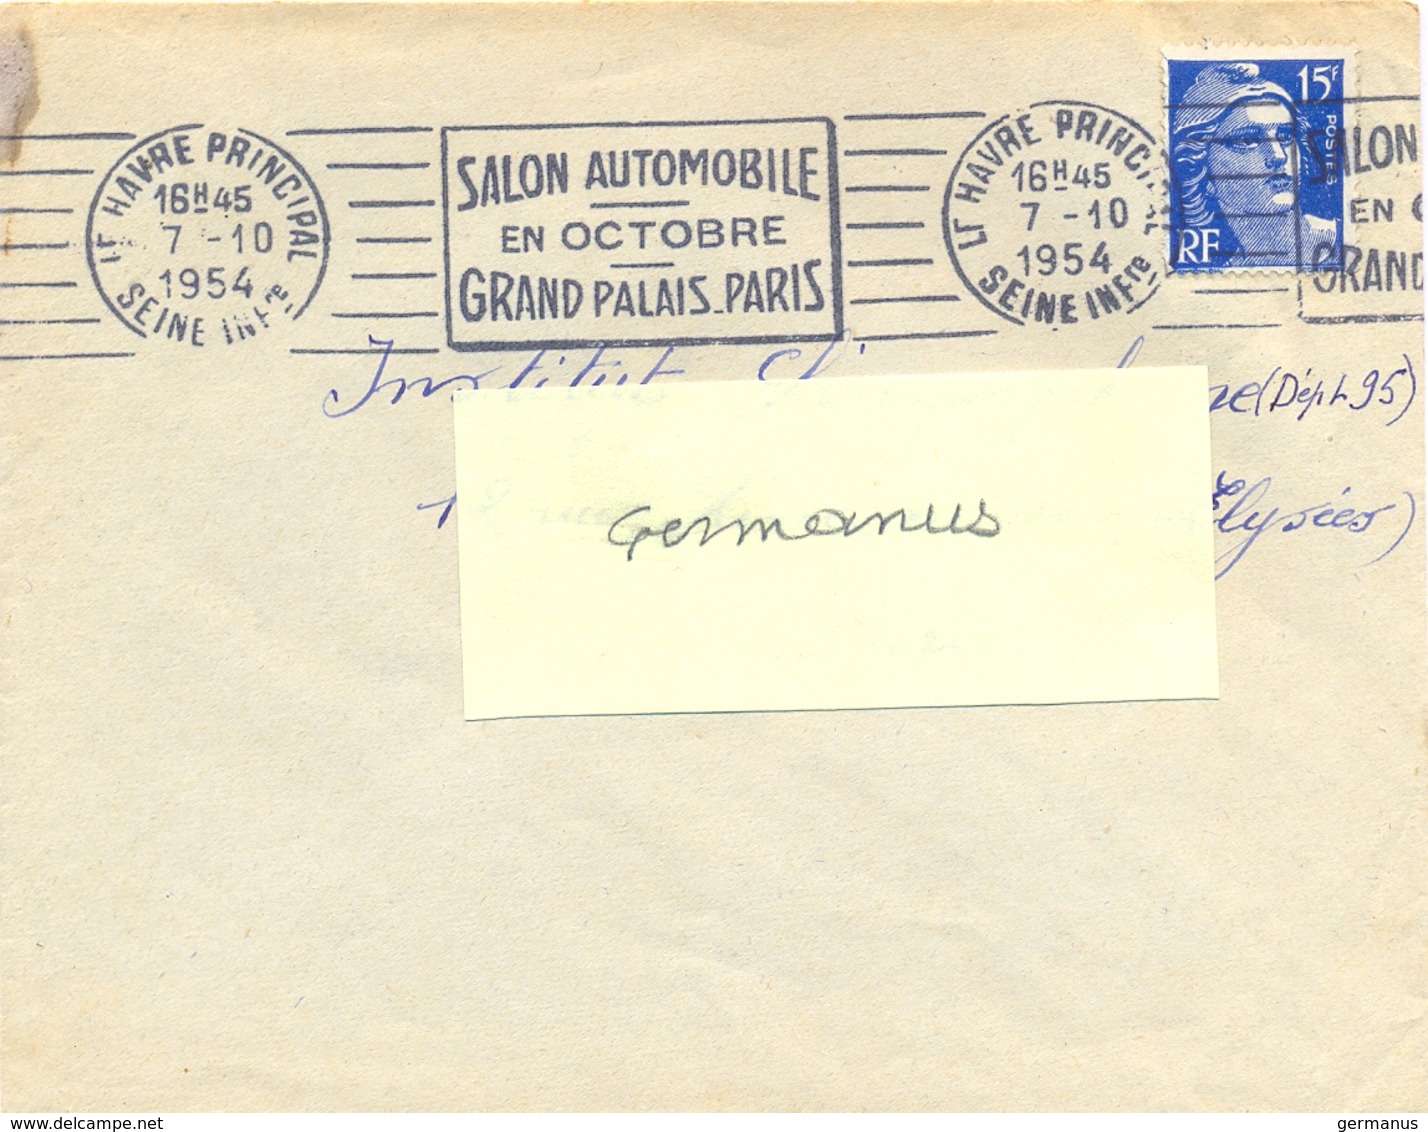 LE HAVRE PRINCIPAL SEINE INfre OMec RBV 7-10-1954 SALON AUTOMOBILE / EN OCTOBRE / GRAND PALAIS PARIS - Mechanical Postmarks (Advertisement)